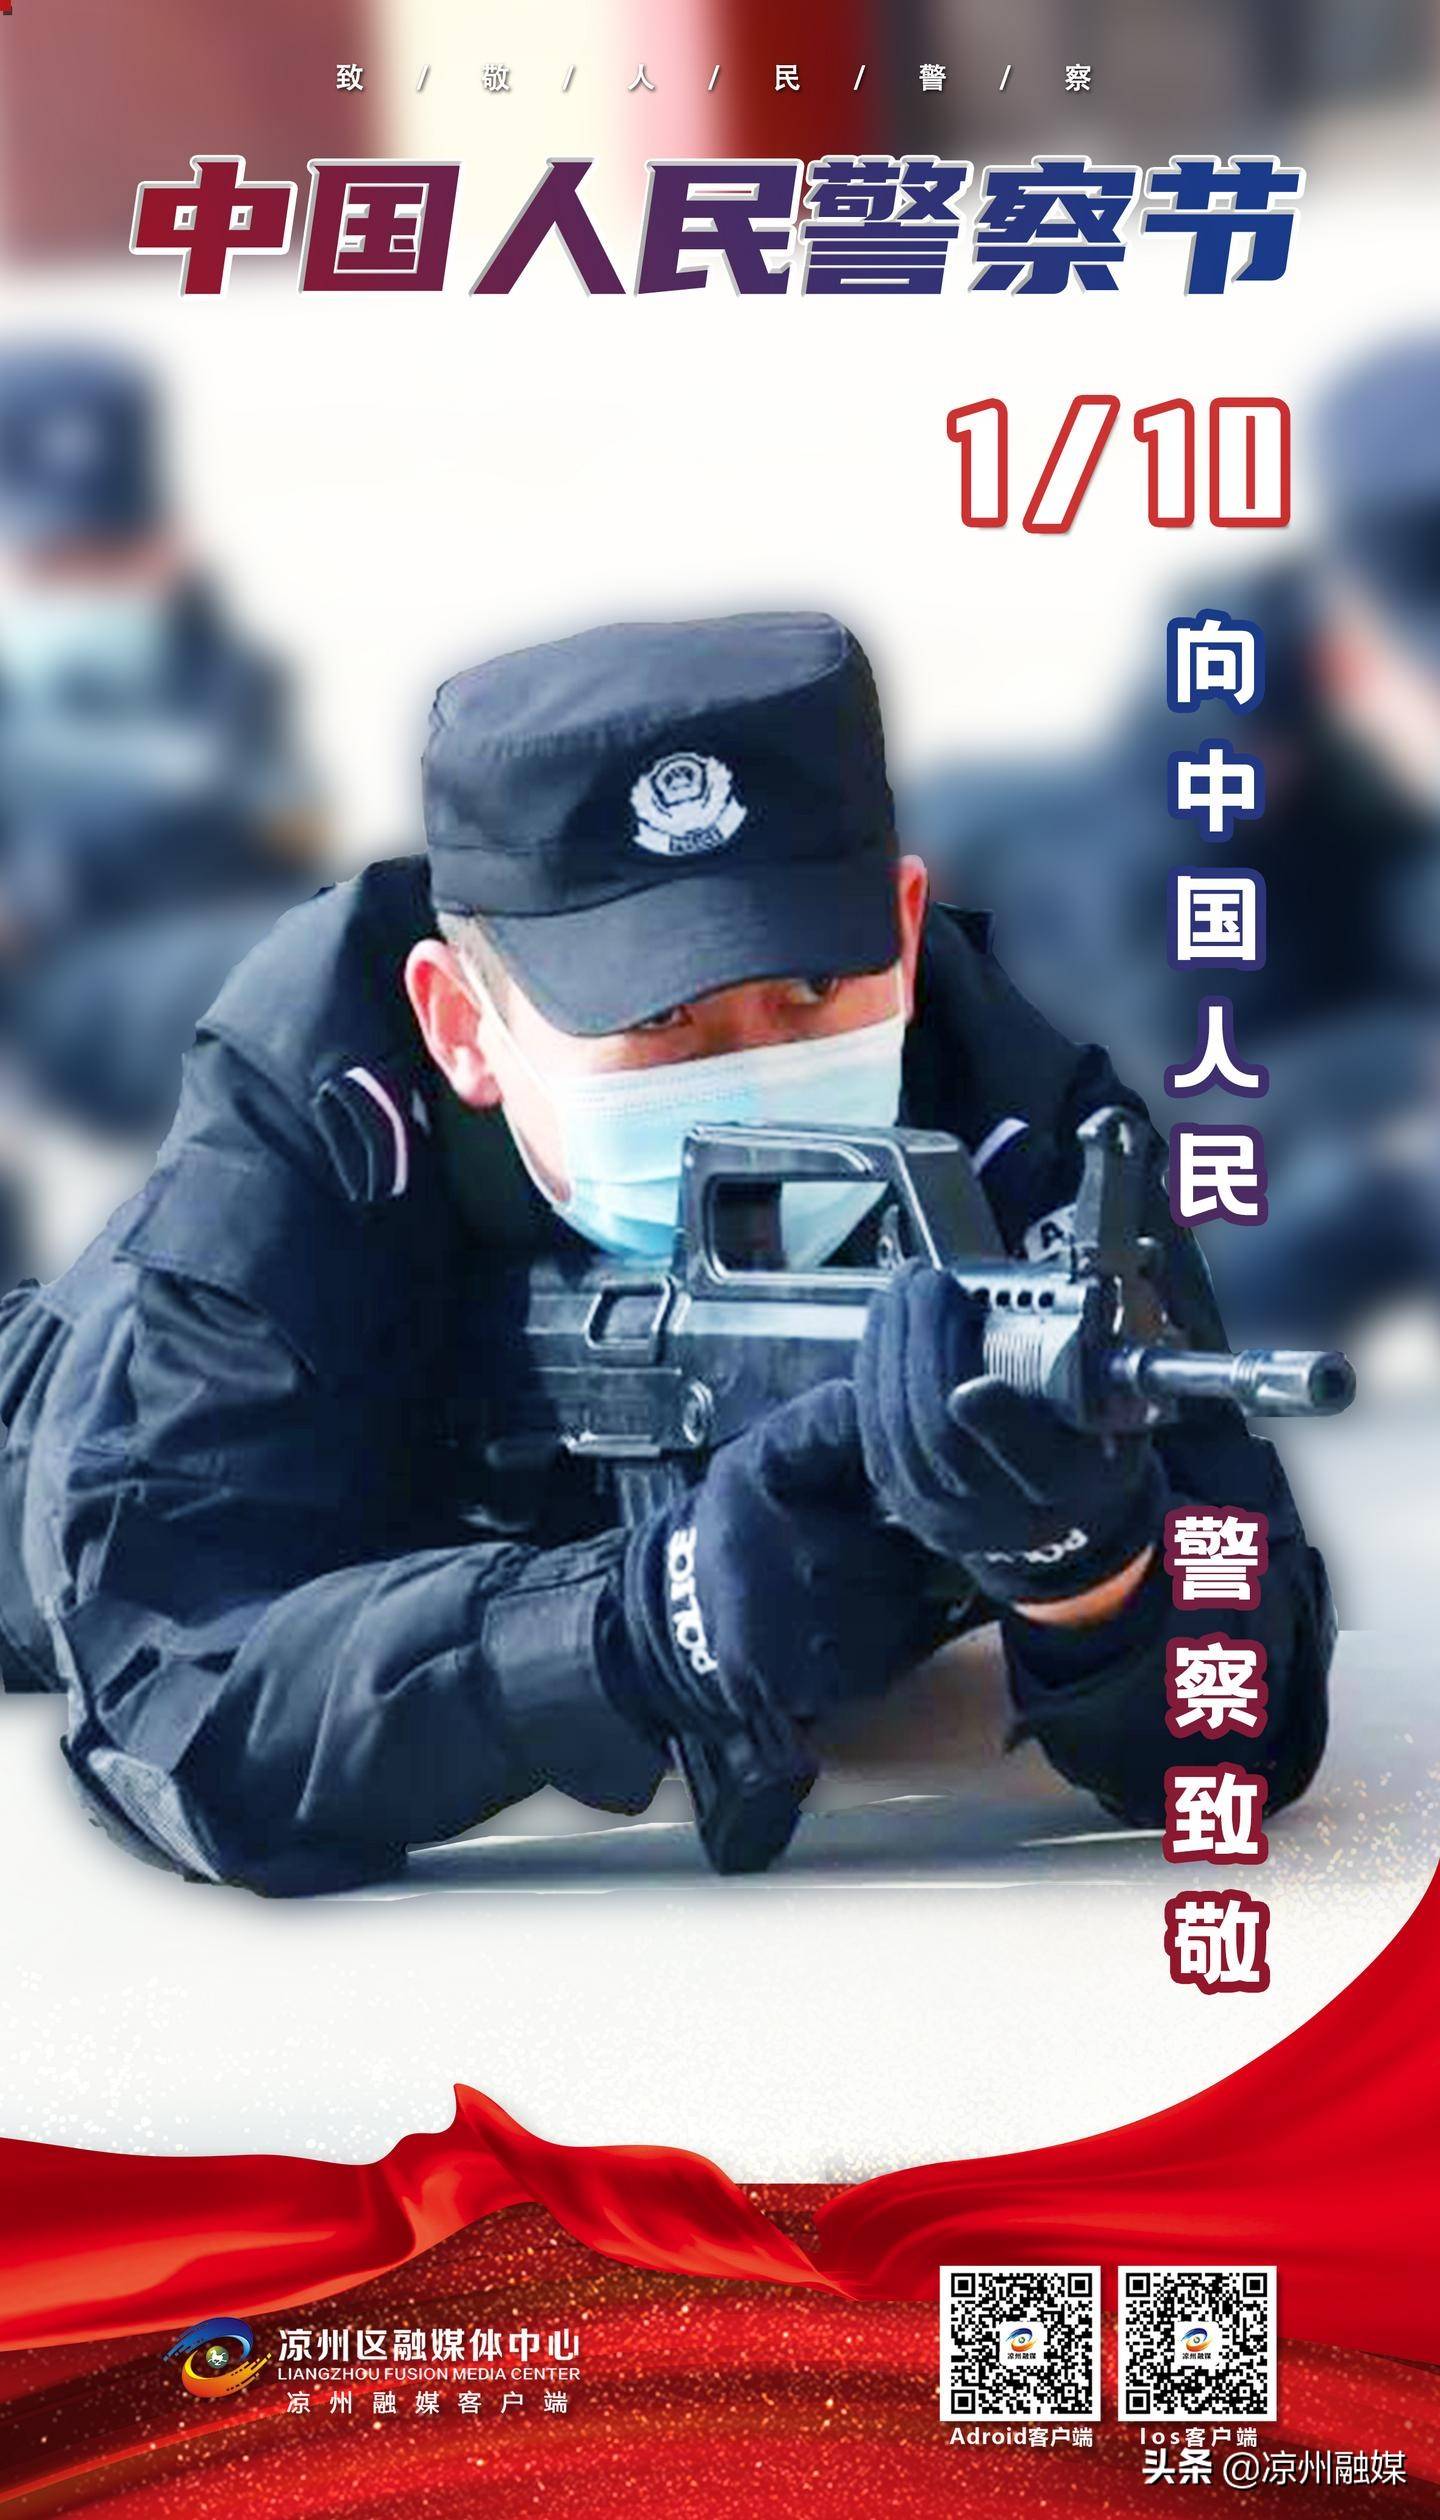 第一个中国人民警察节  向人民警察致敬!